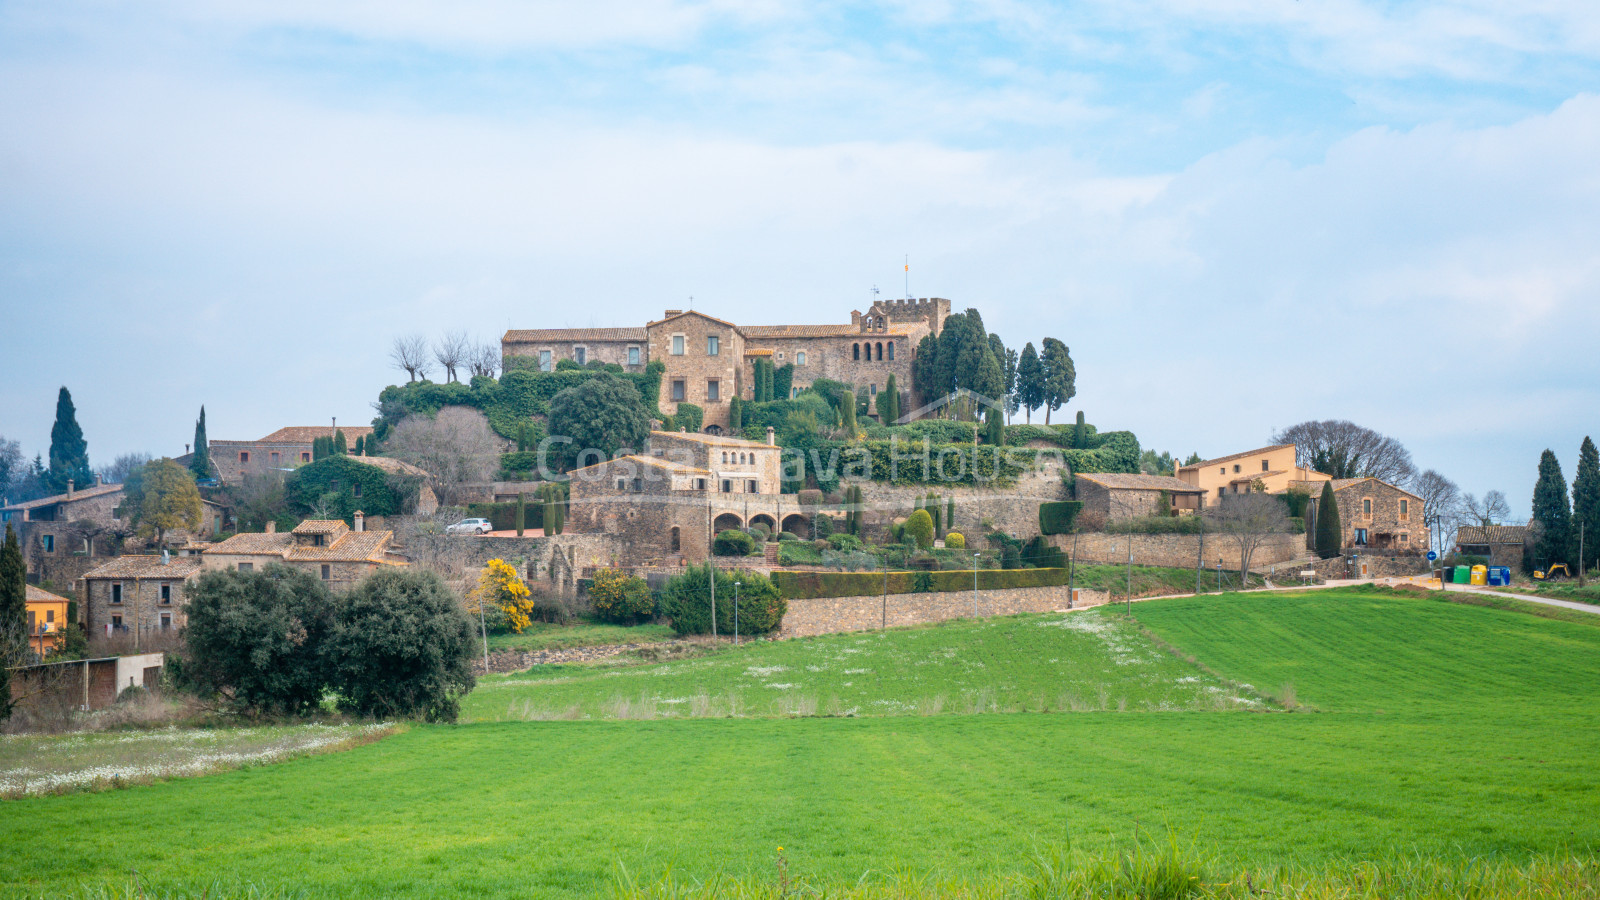 Propietat en venda als afores de Foixà, molt a prop del castell, amb gran terreny i 2 cases